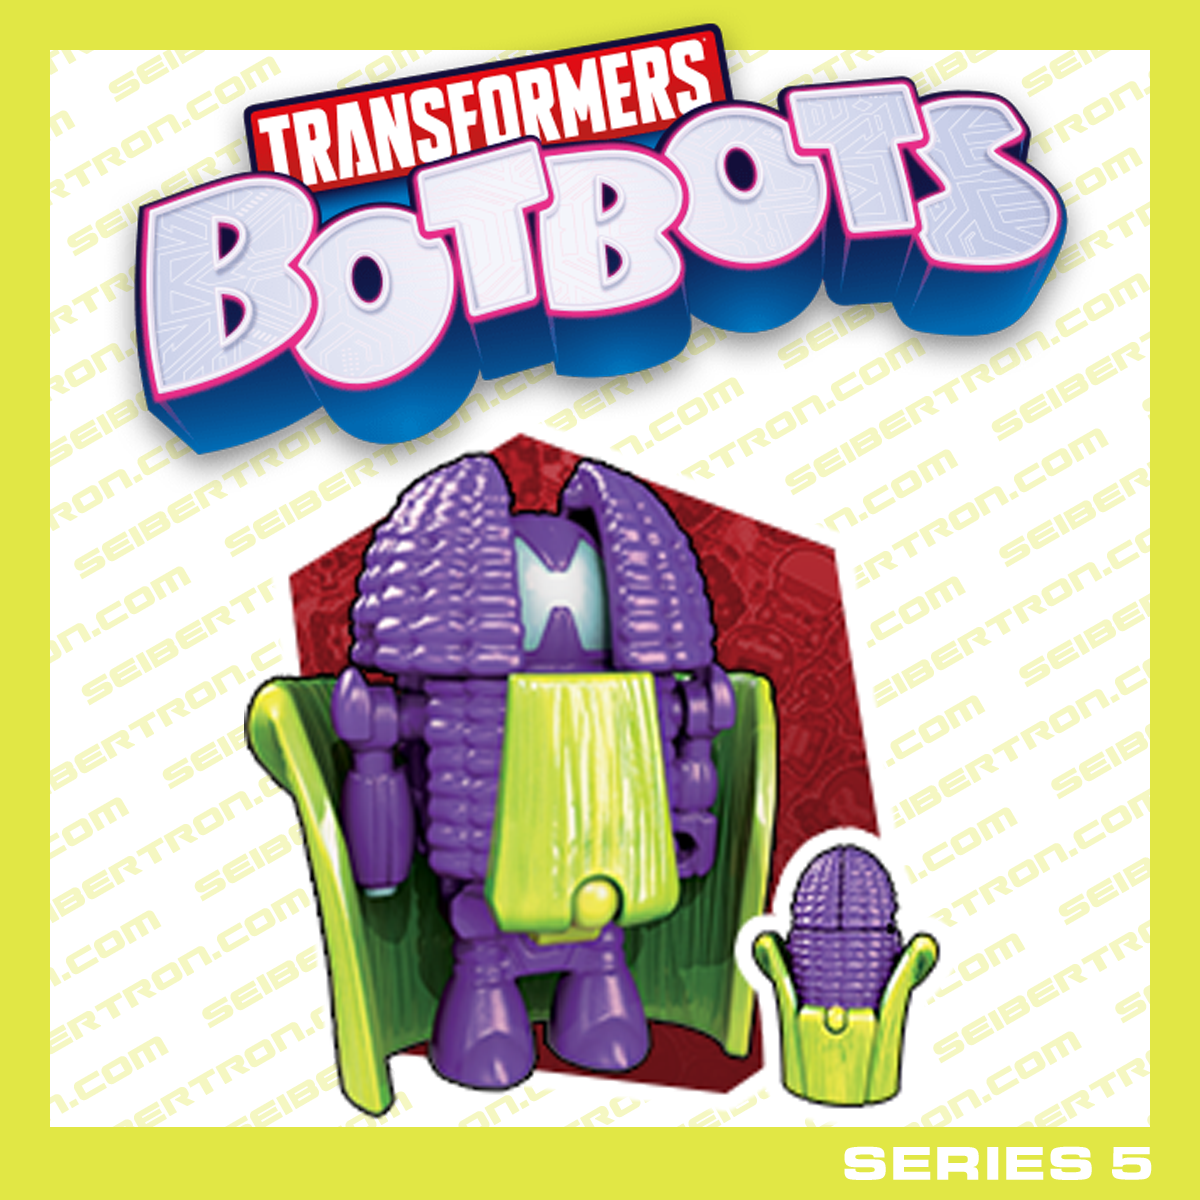 THE CORN CRUSADER Transformers BotBots Series 5 Los Deliciosos purple corn 2020